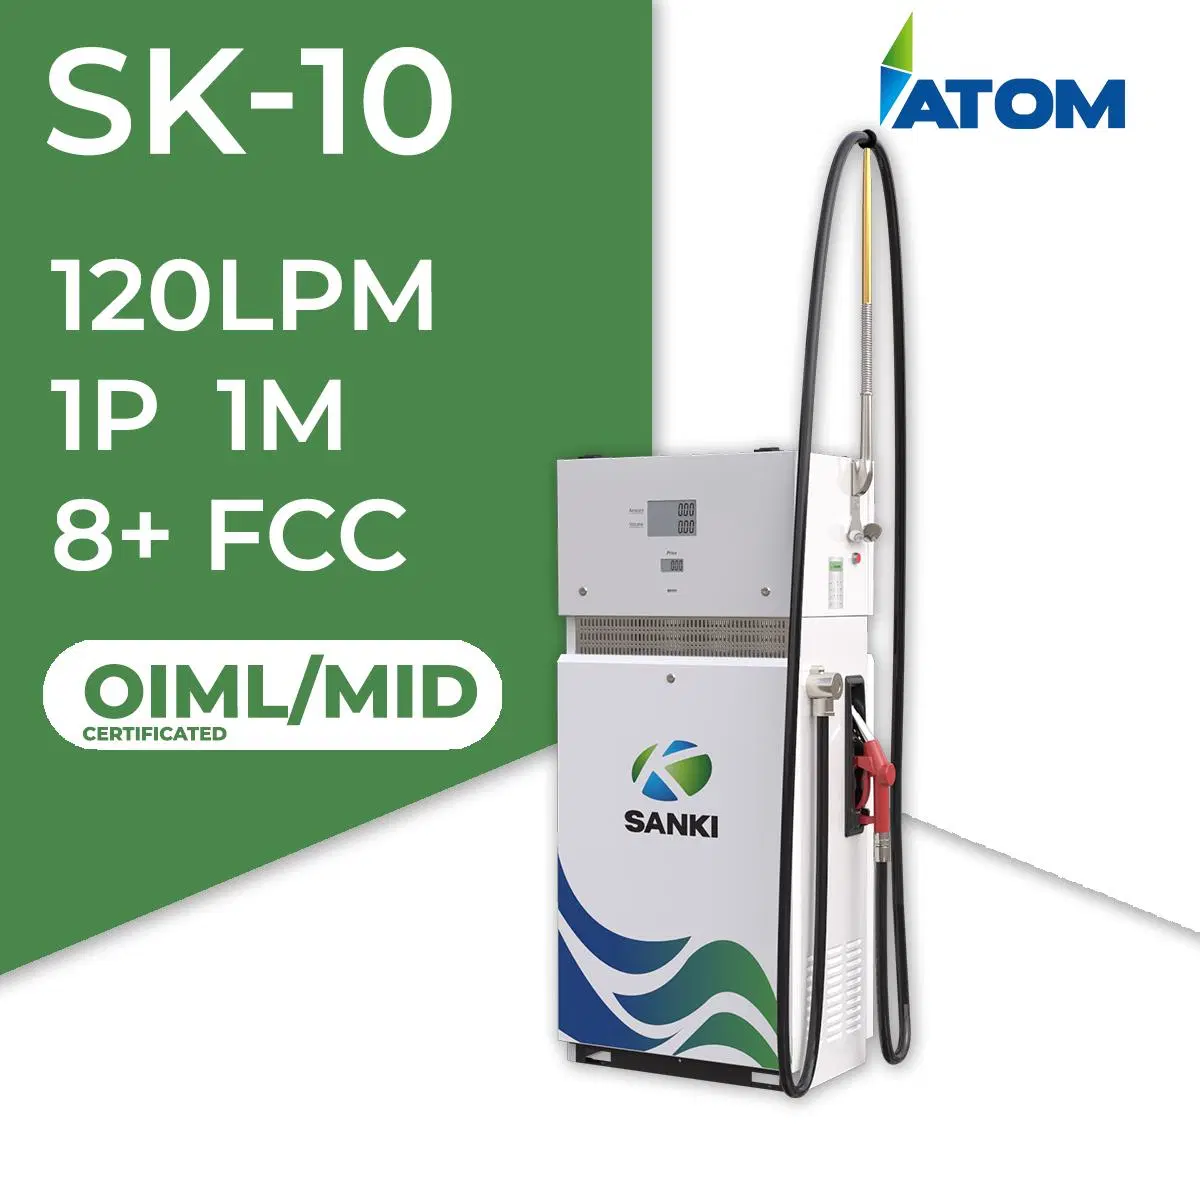 Sanki Atom-10 120lpm en 1 de la boquilla con certificado OIML\MID dispensador de combustible